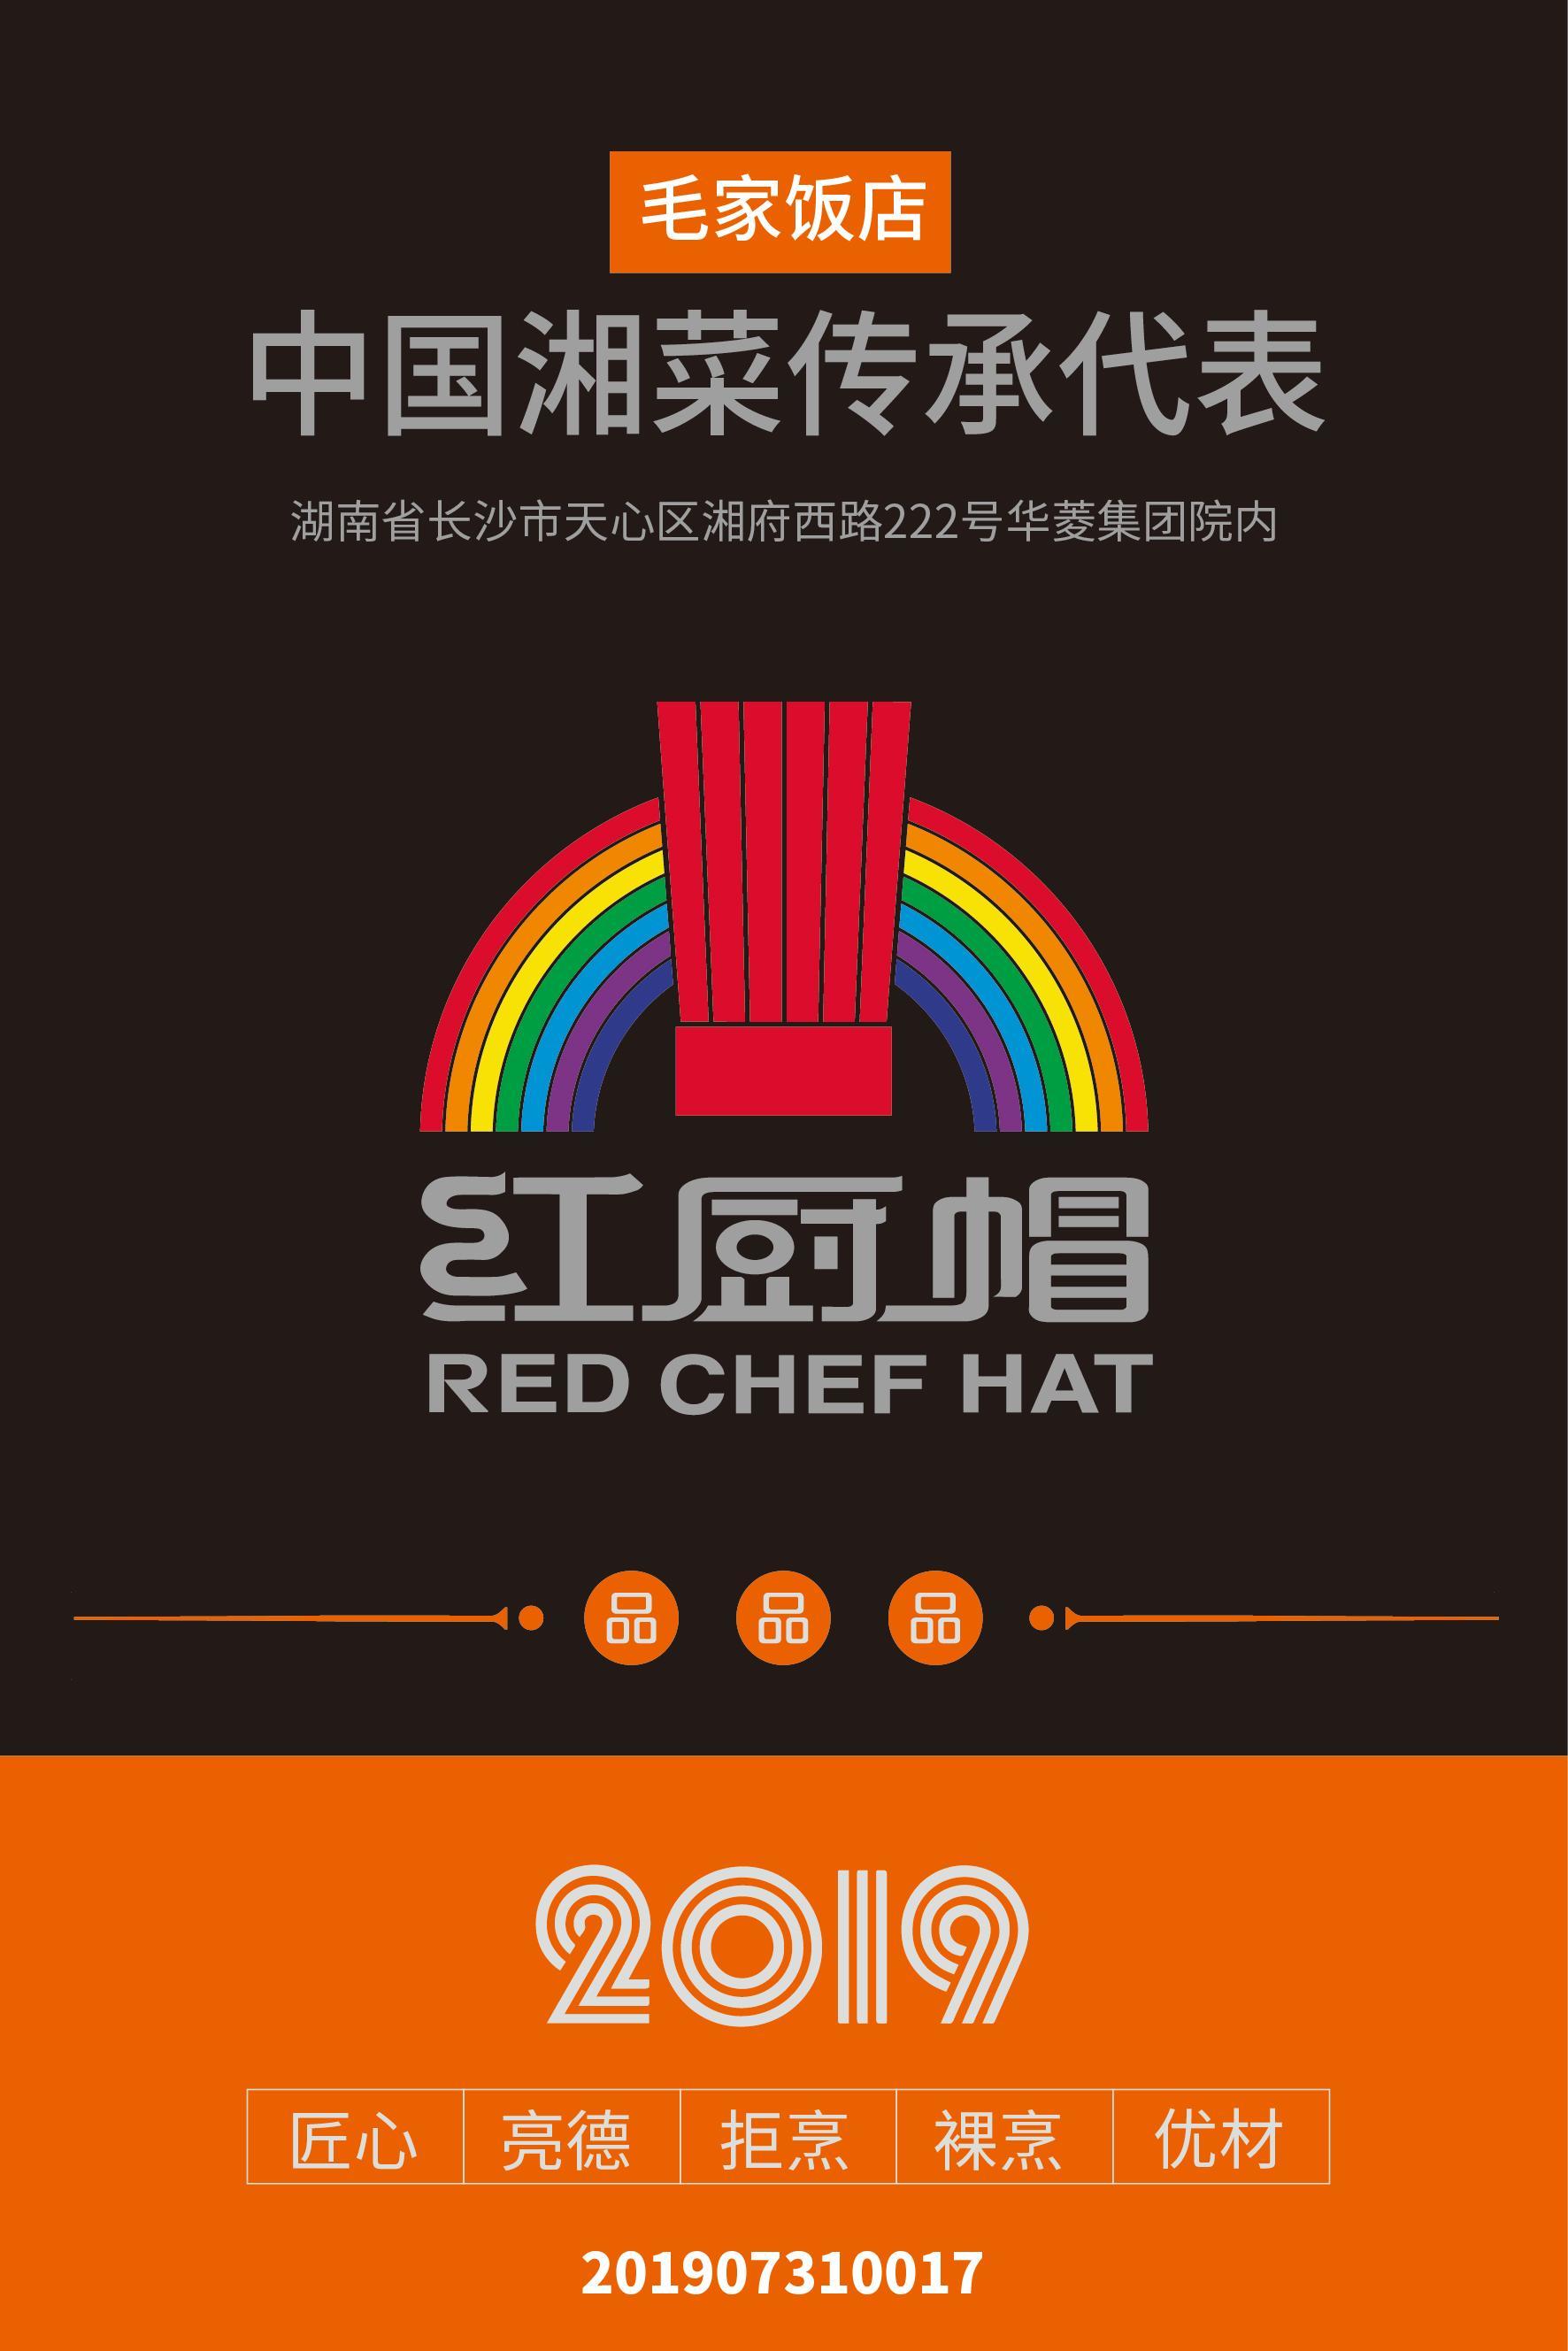 2019红厨帽餐厅